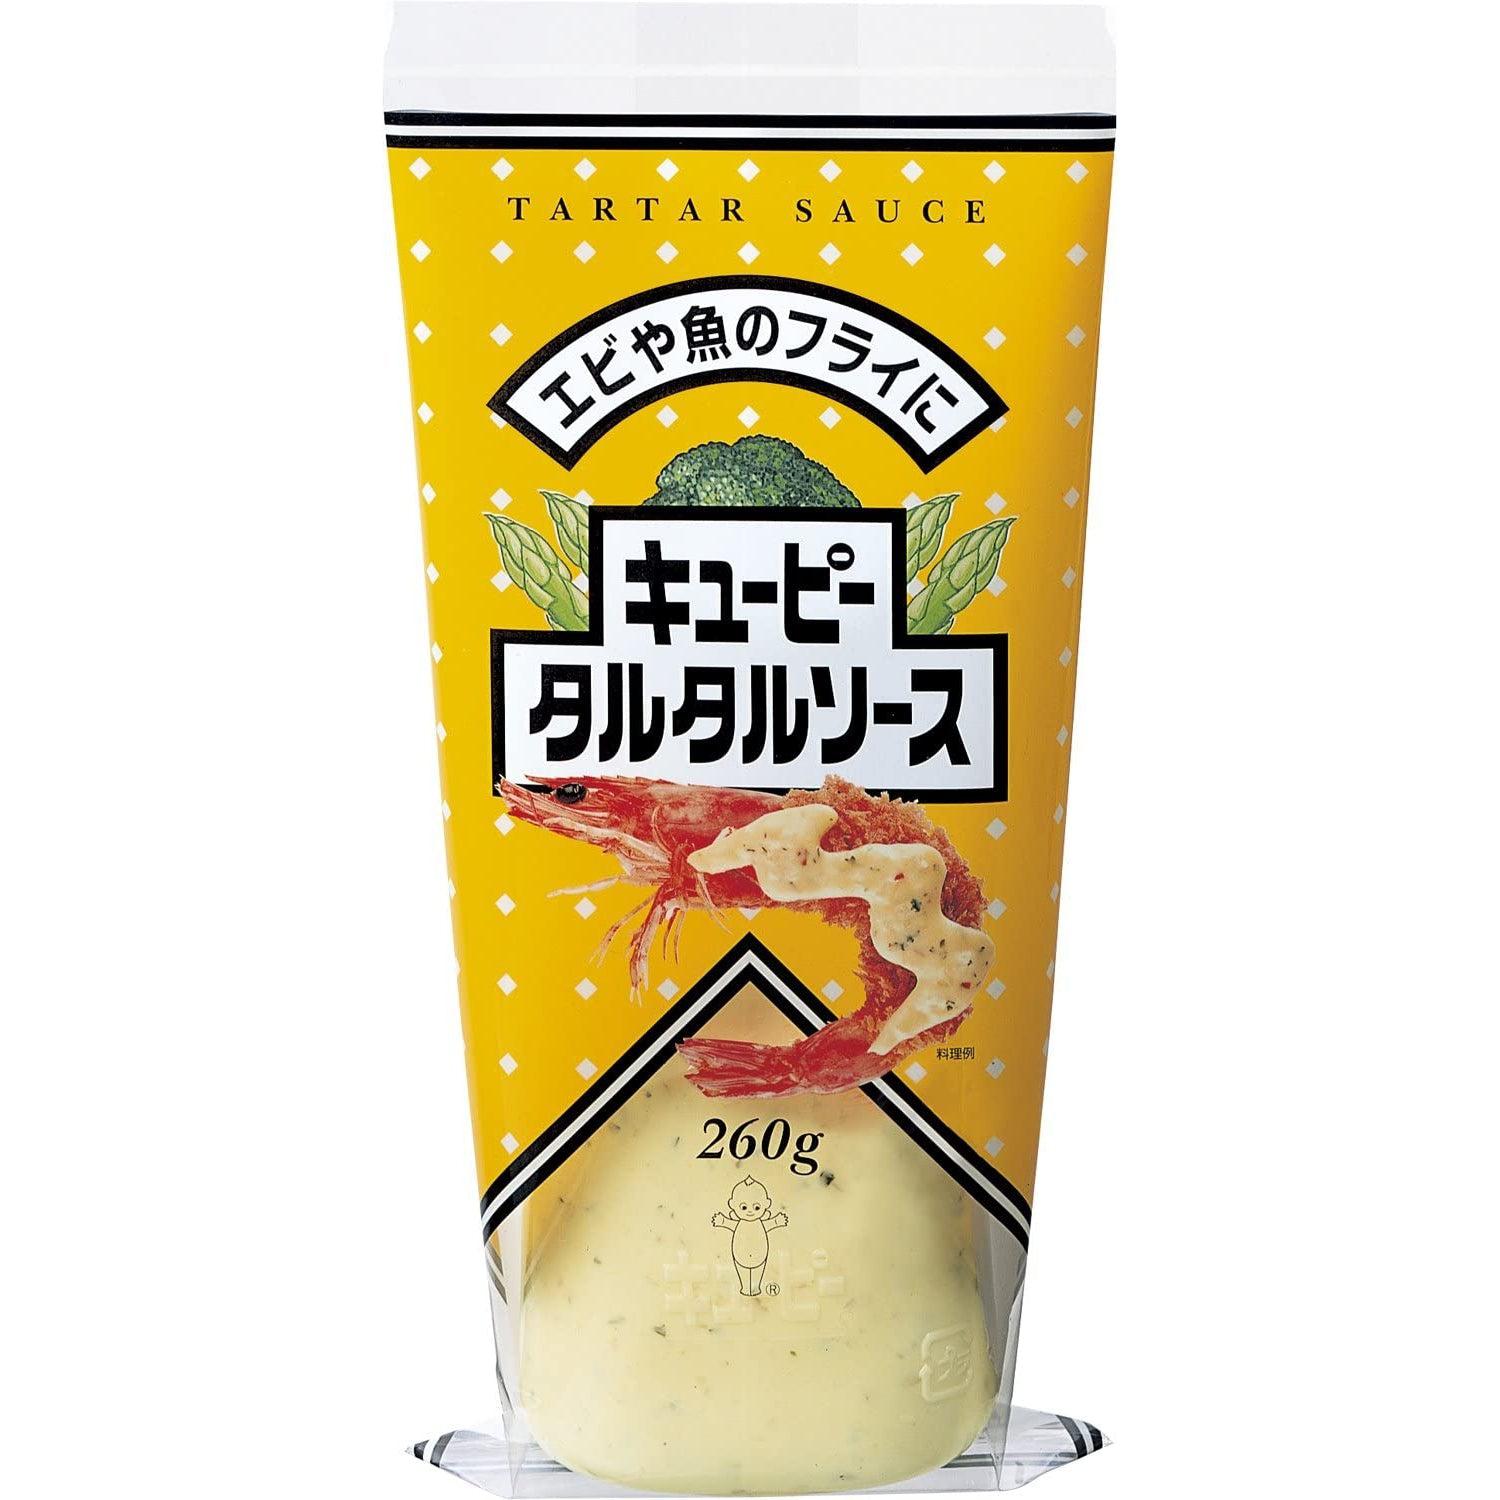 Kewpie Japanese Tartar Sauce 260g